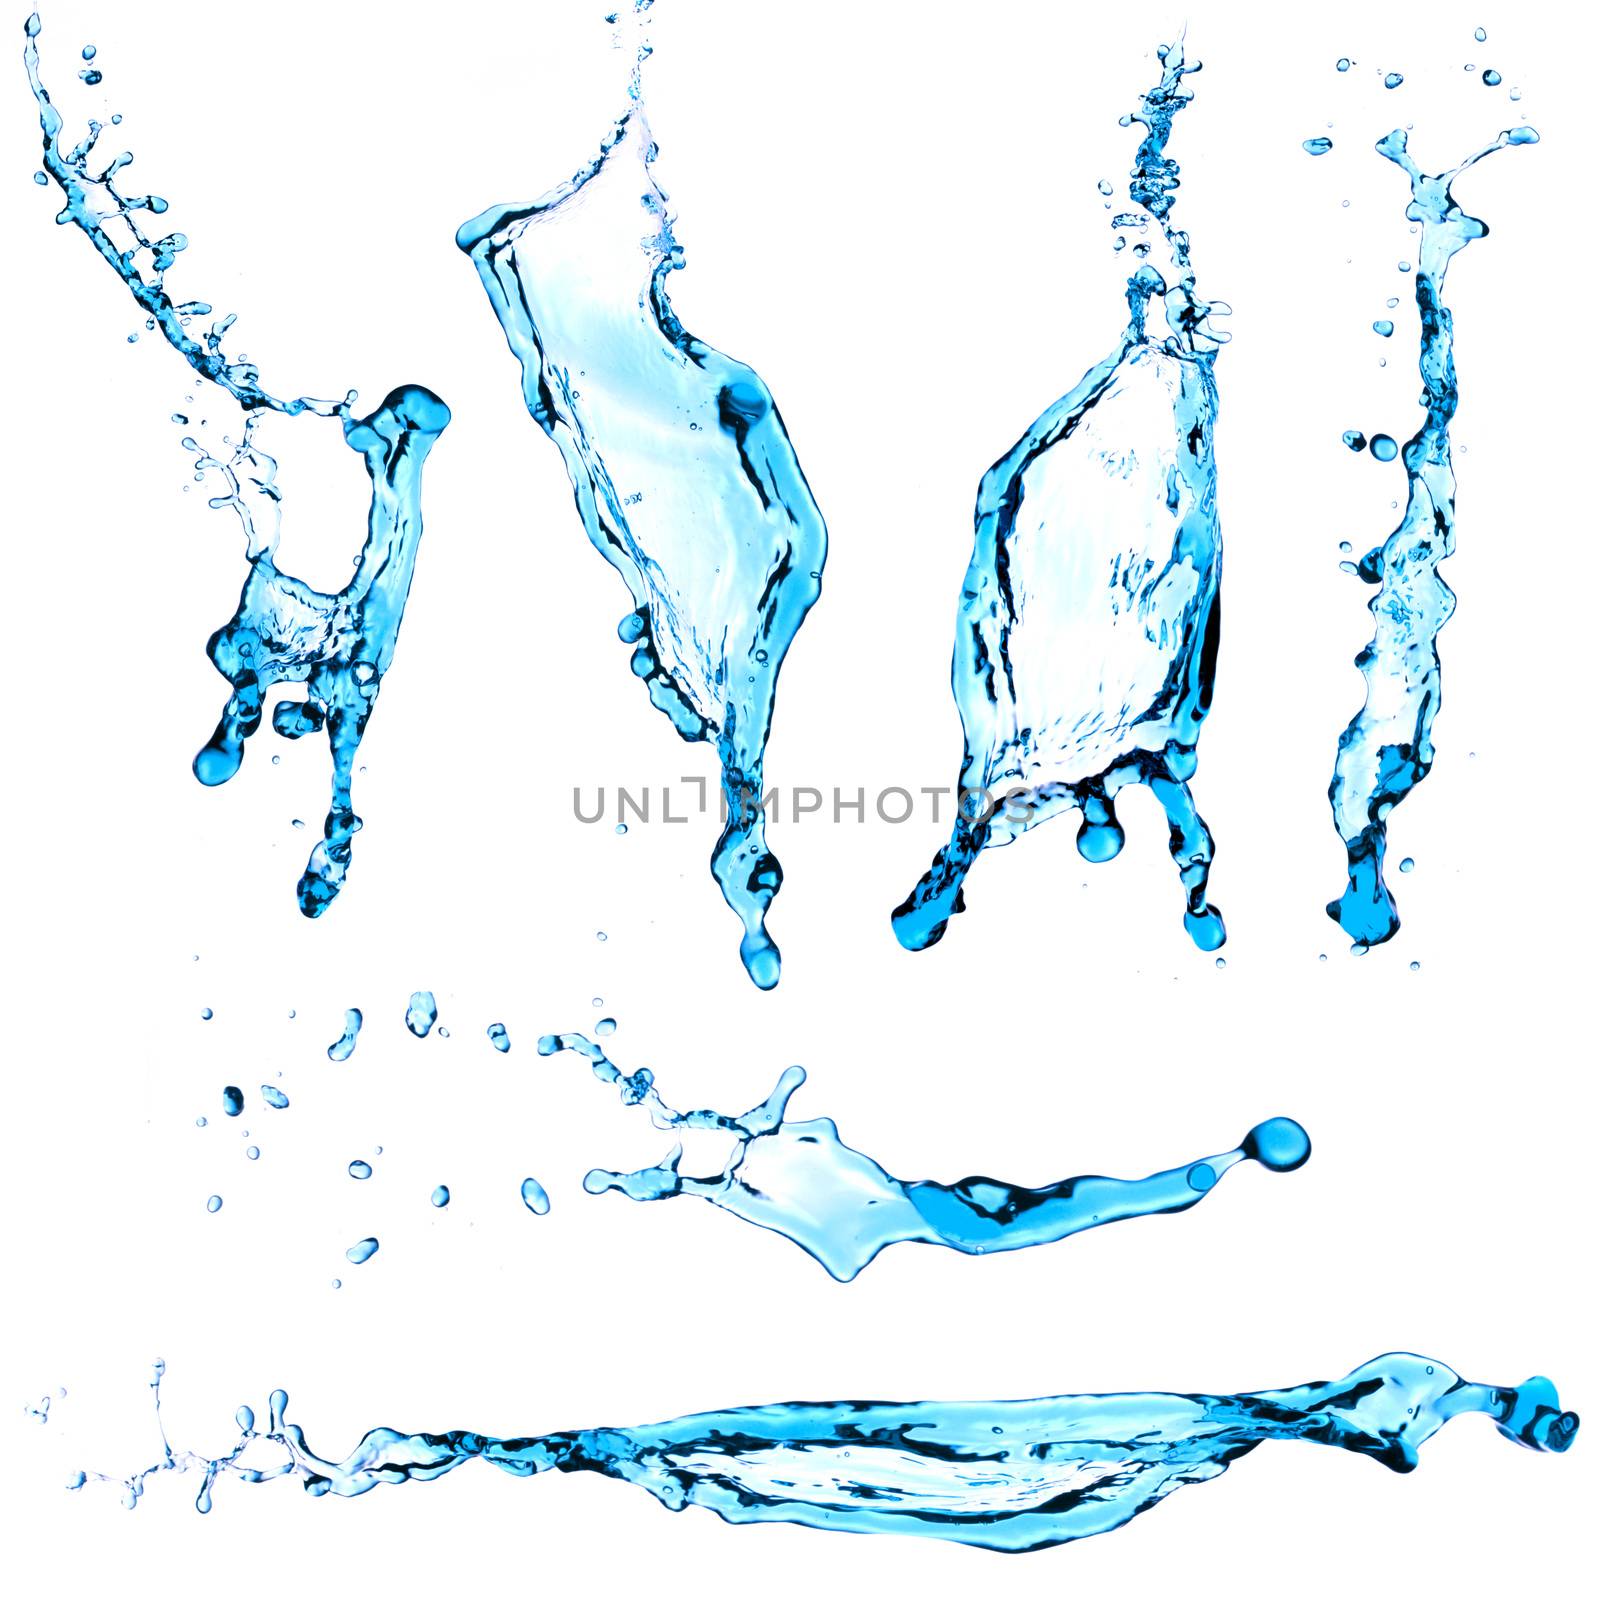 Blue water splash set isolated on white background